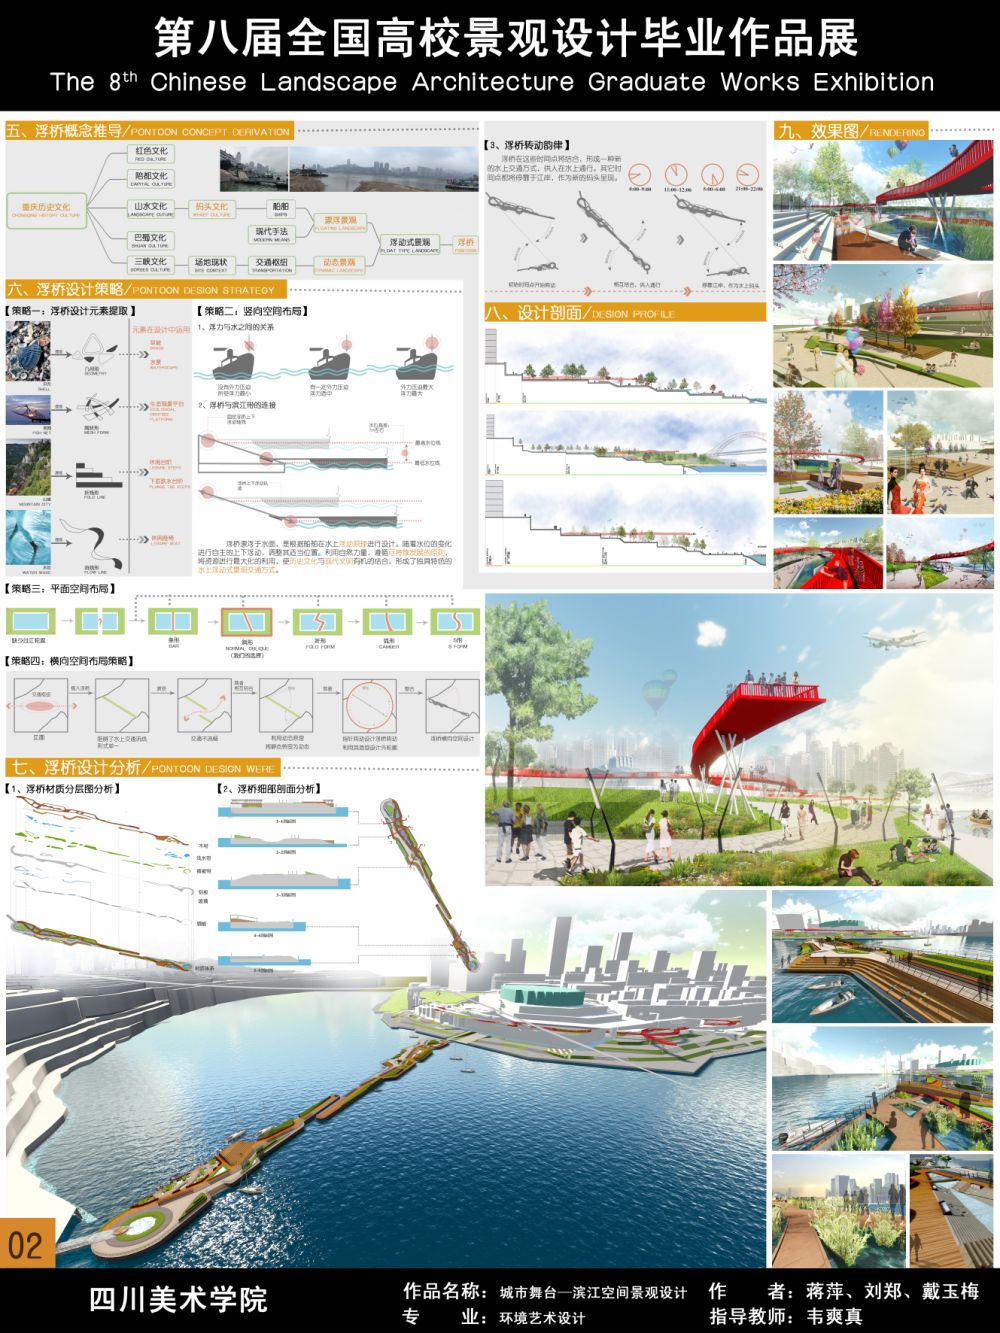 城市舞台——重庆市江北嘴滨江空间景观设计-2